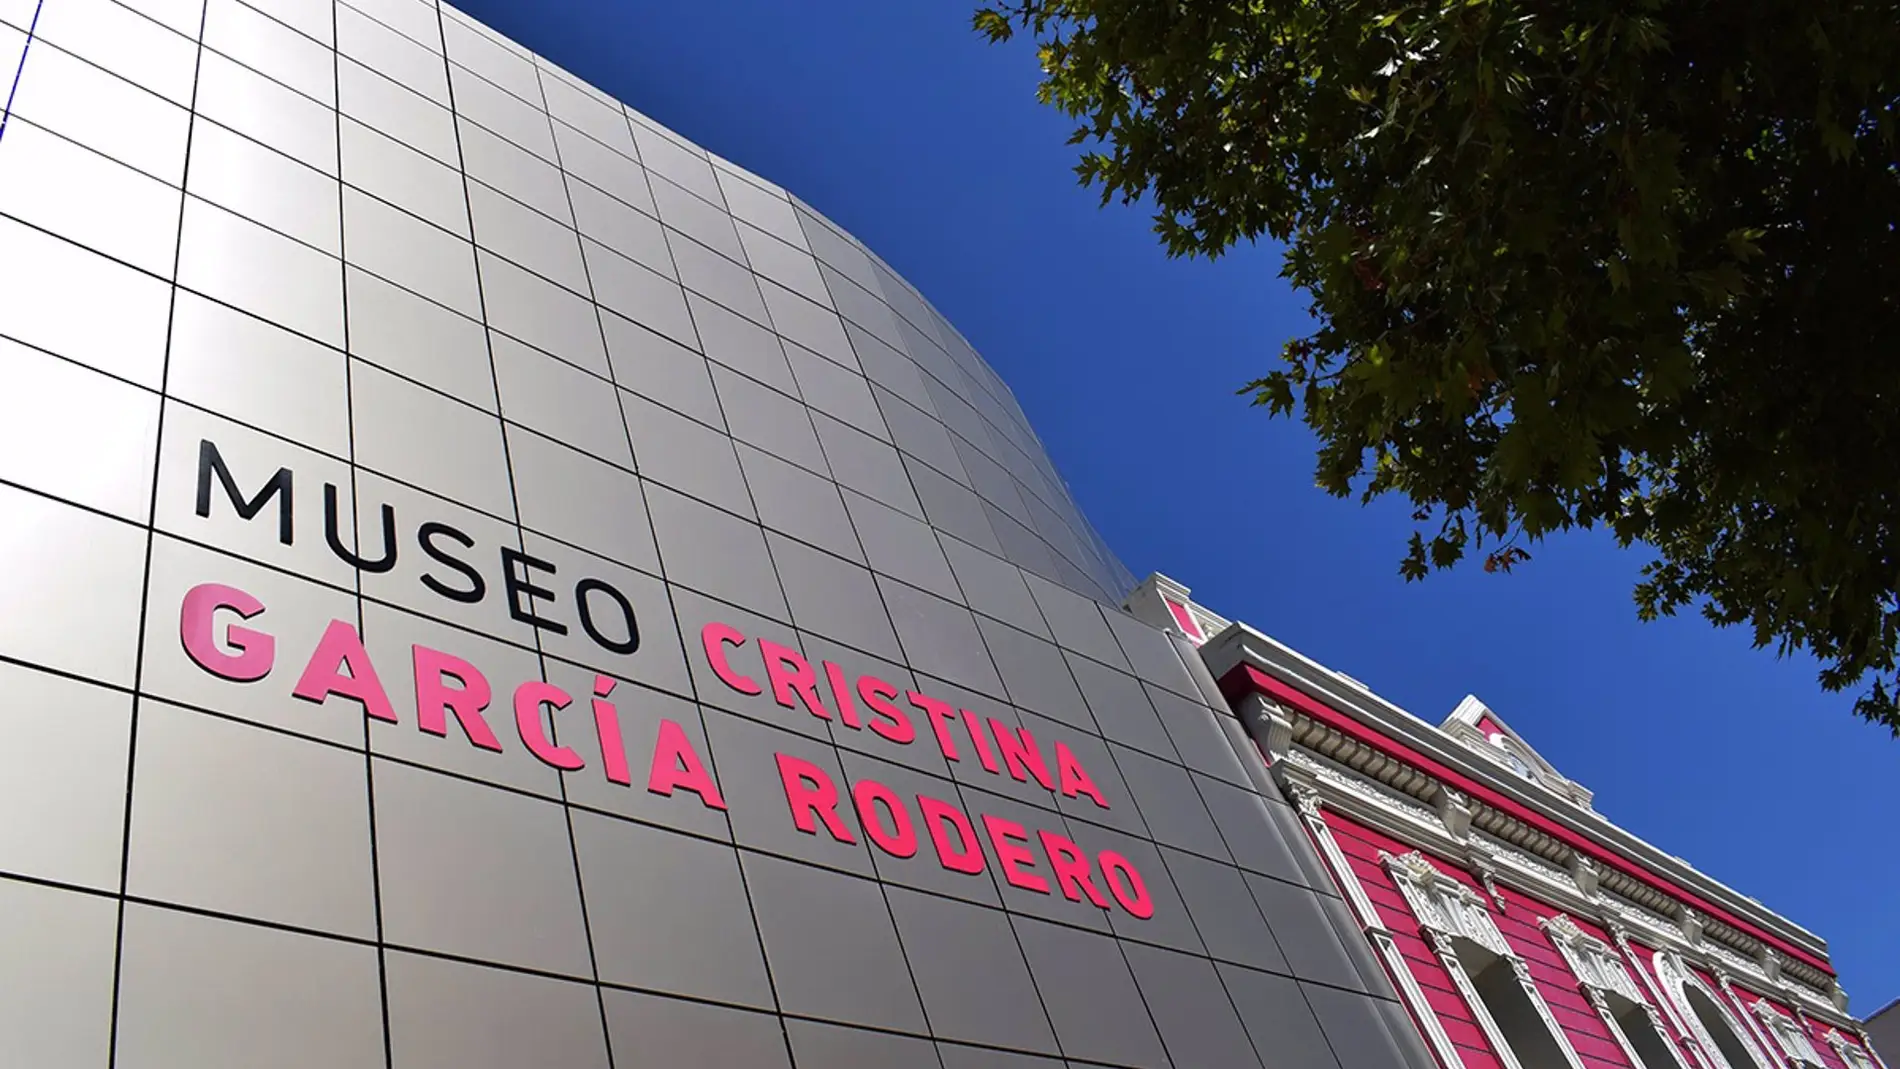 El accidente tuvo lugar en el museo "Cristina García Rodero"